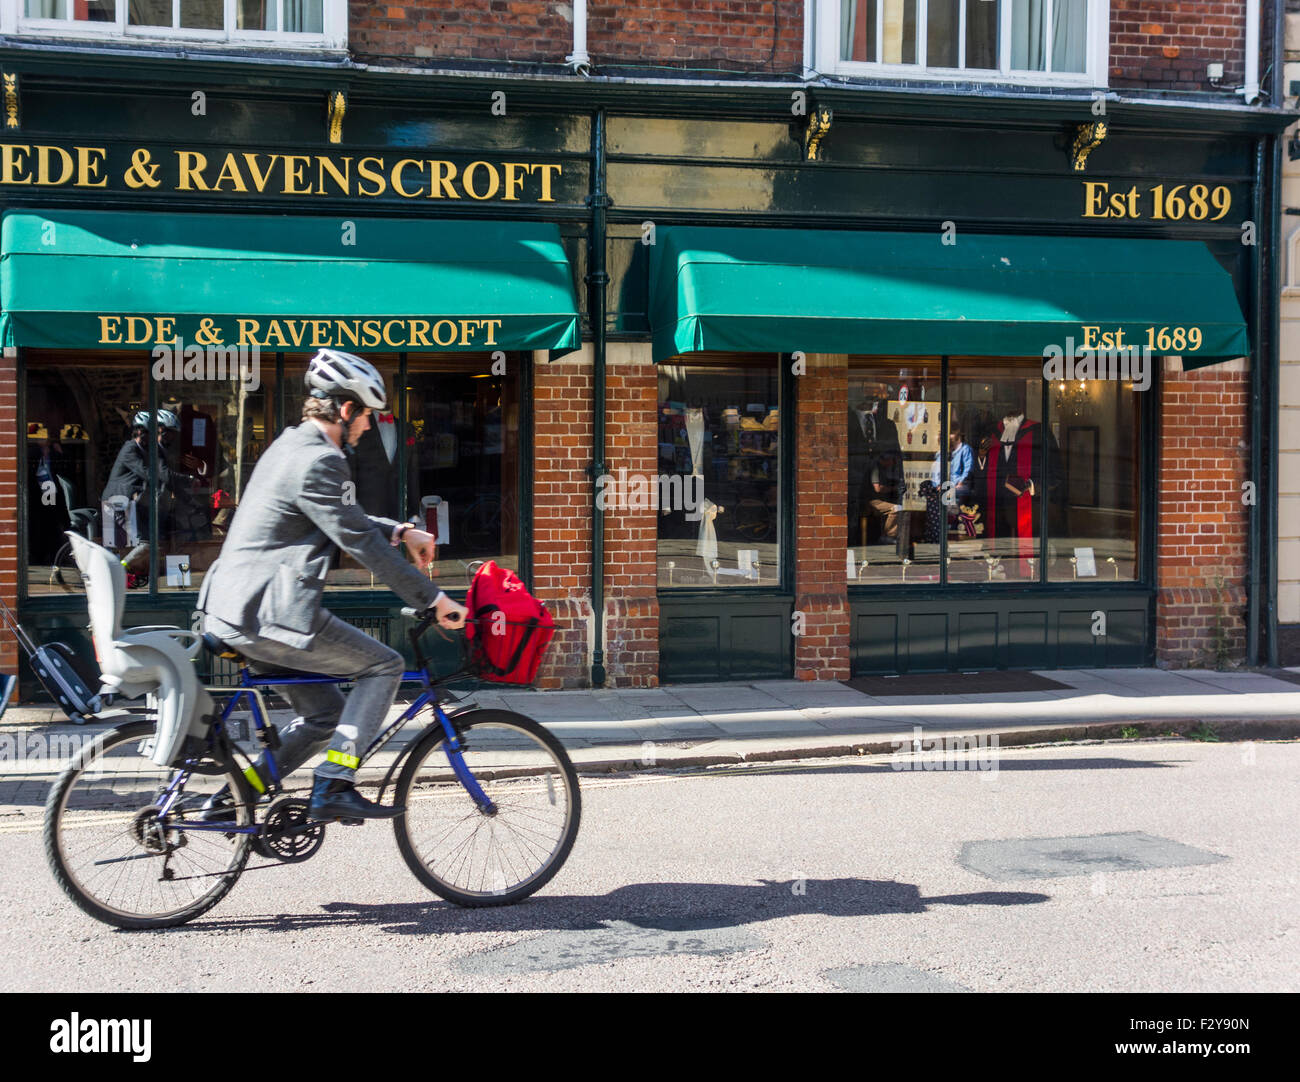 Radfahrer vor Ede und Ravenscroft Bekleidungsgeschäft, Cambridge, England, UK Stockfoto